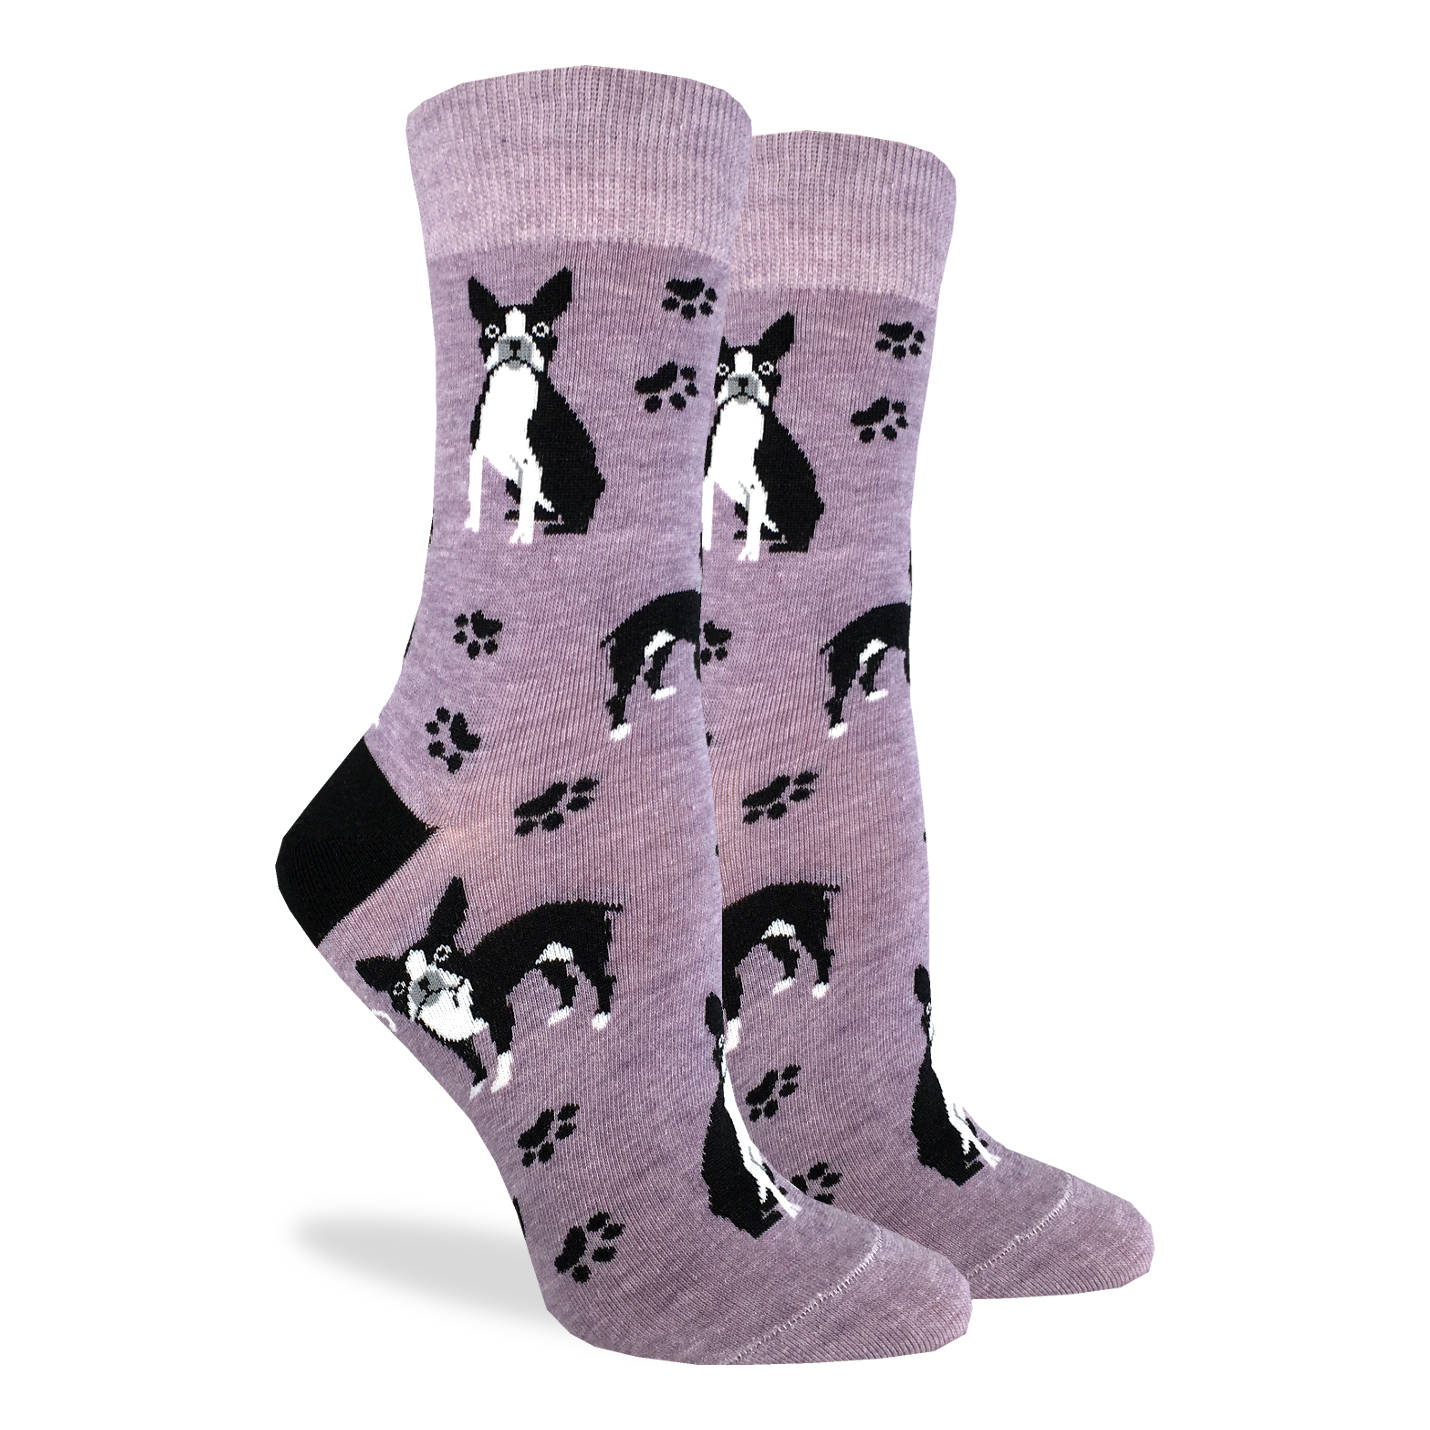 Good Luck Sock - Women's Boston Terrier Socks